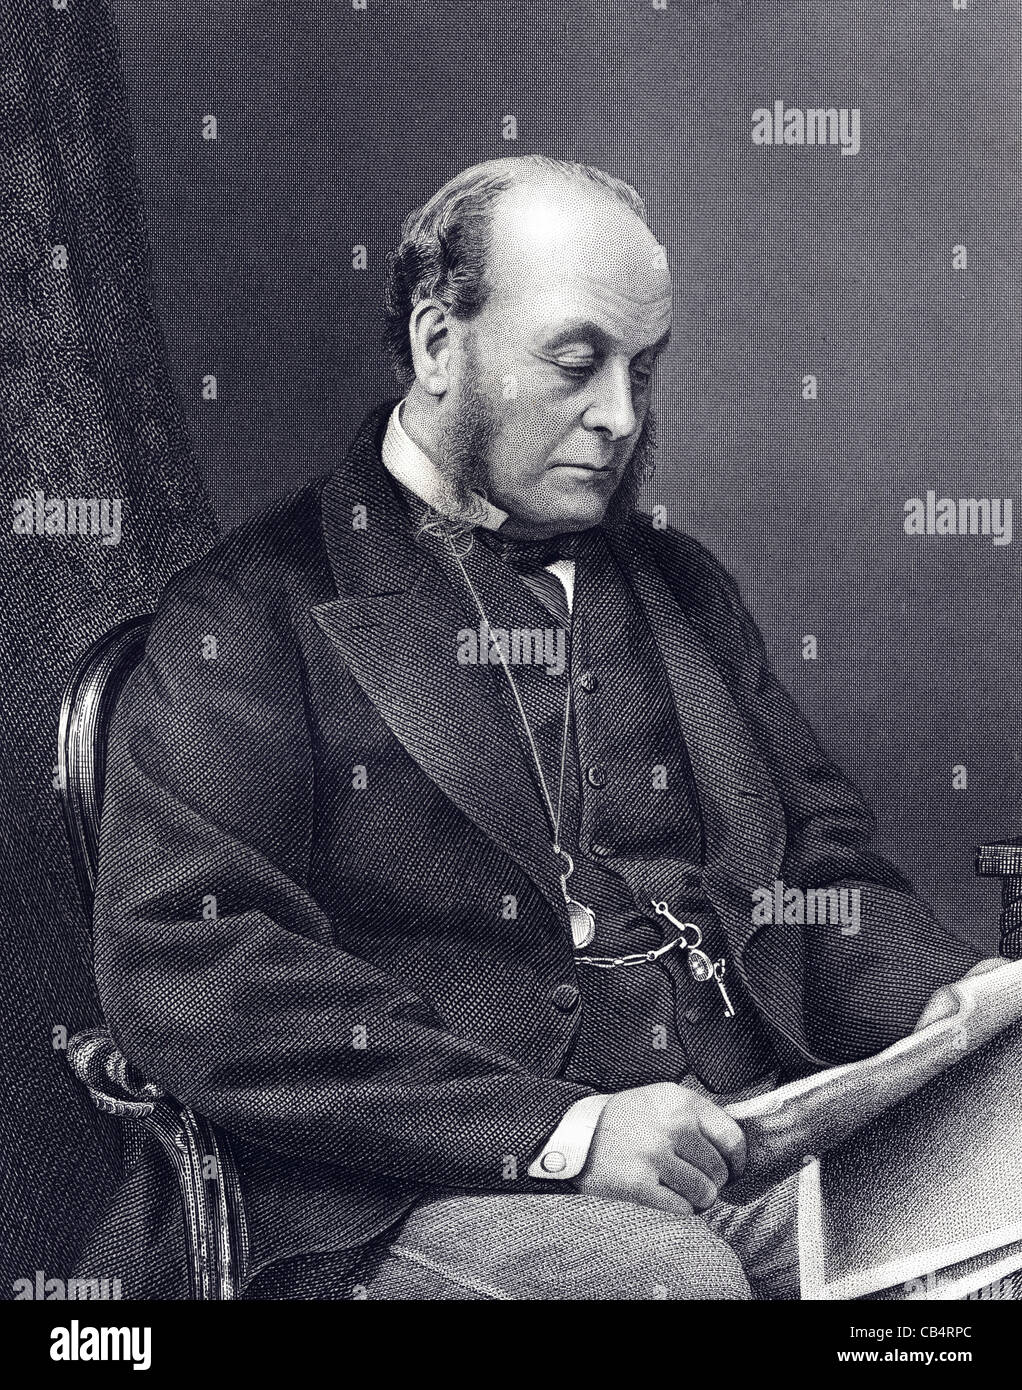 Gathorne Hardy, 1er comte de Cranbrook GCSI PC (1814 - 1906) était un homme politique conservateur britannique de l'époque victorienne. Banque D'Images